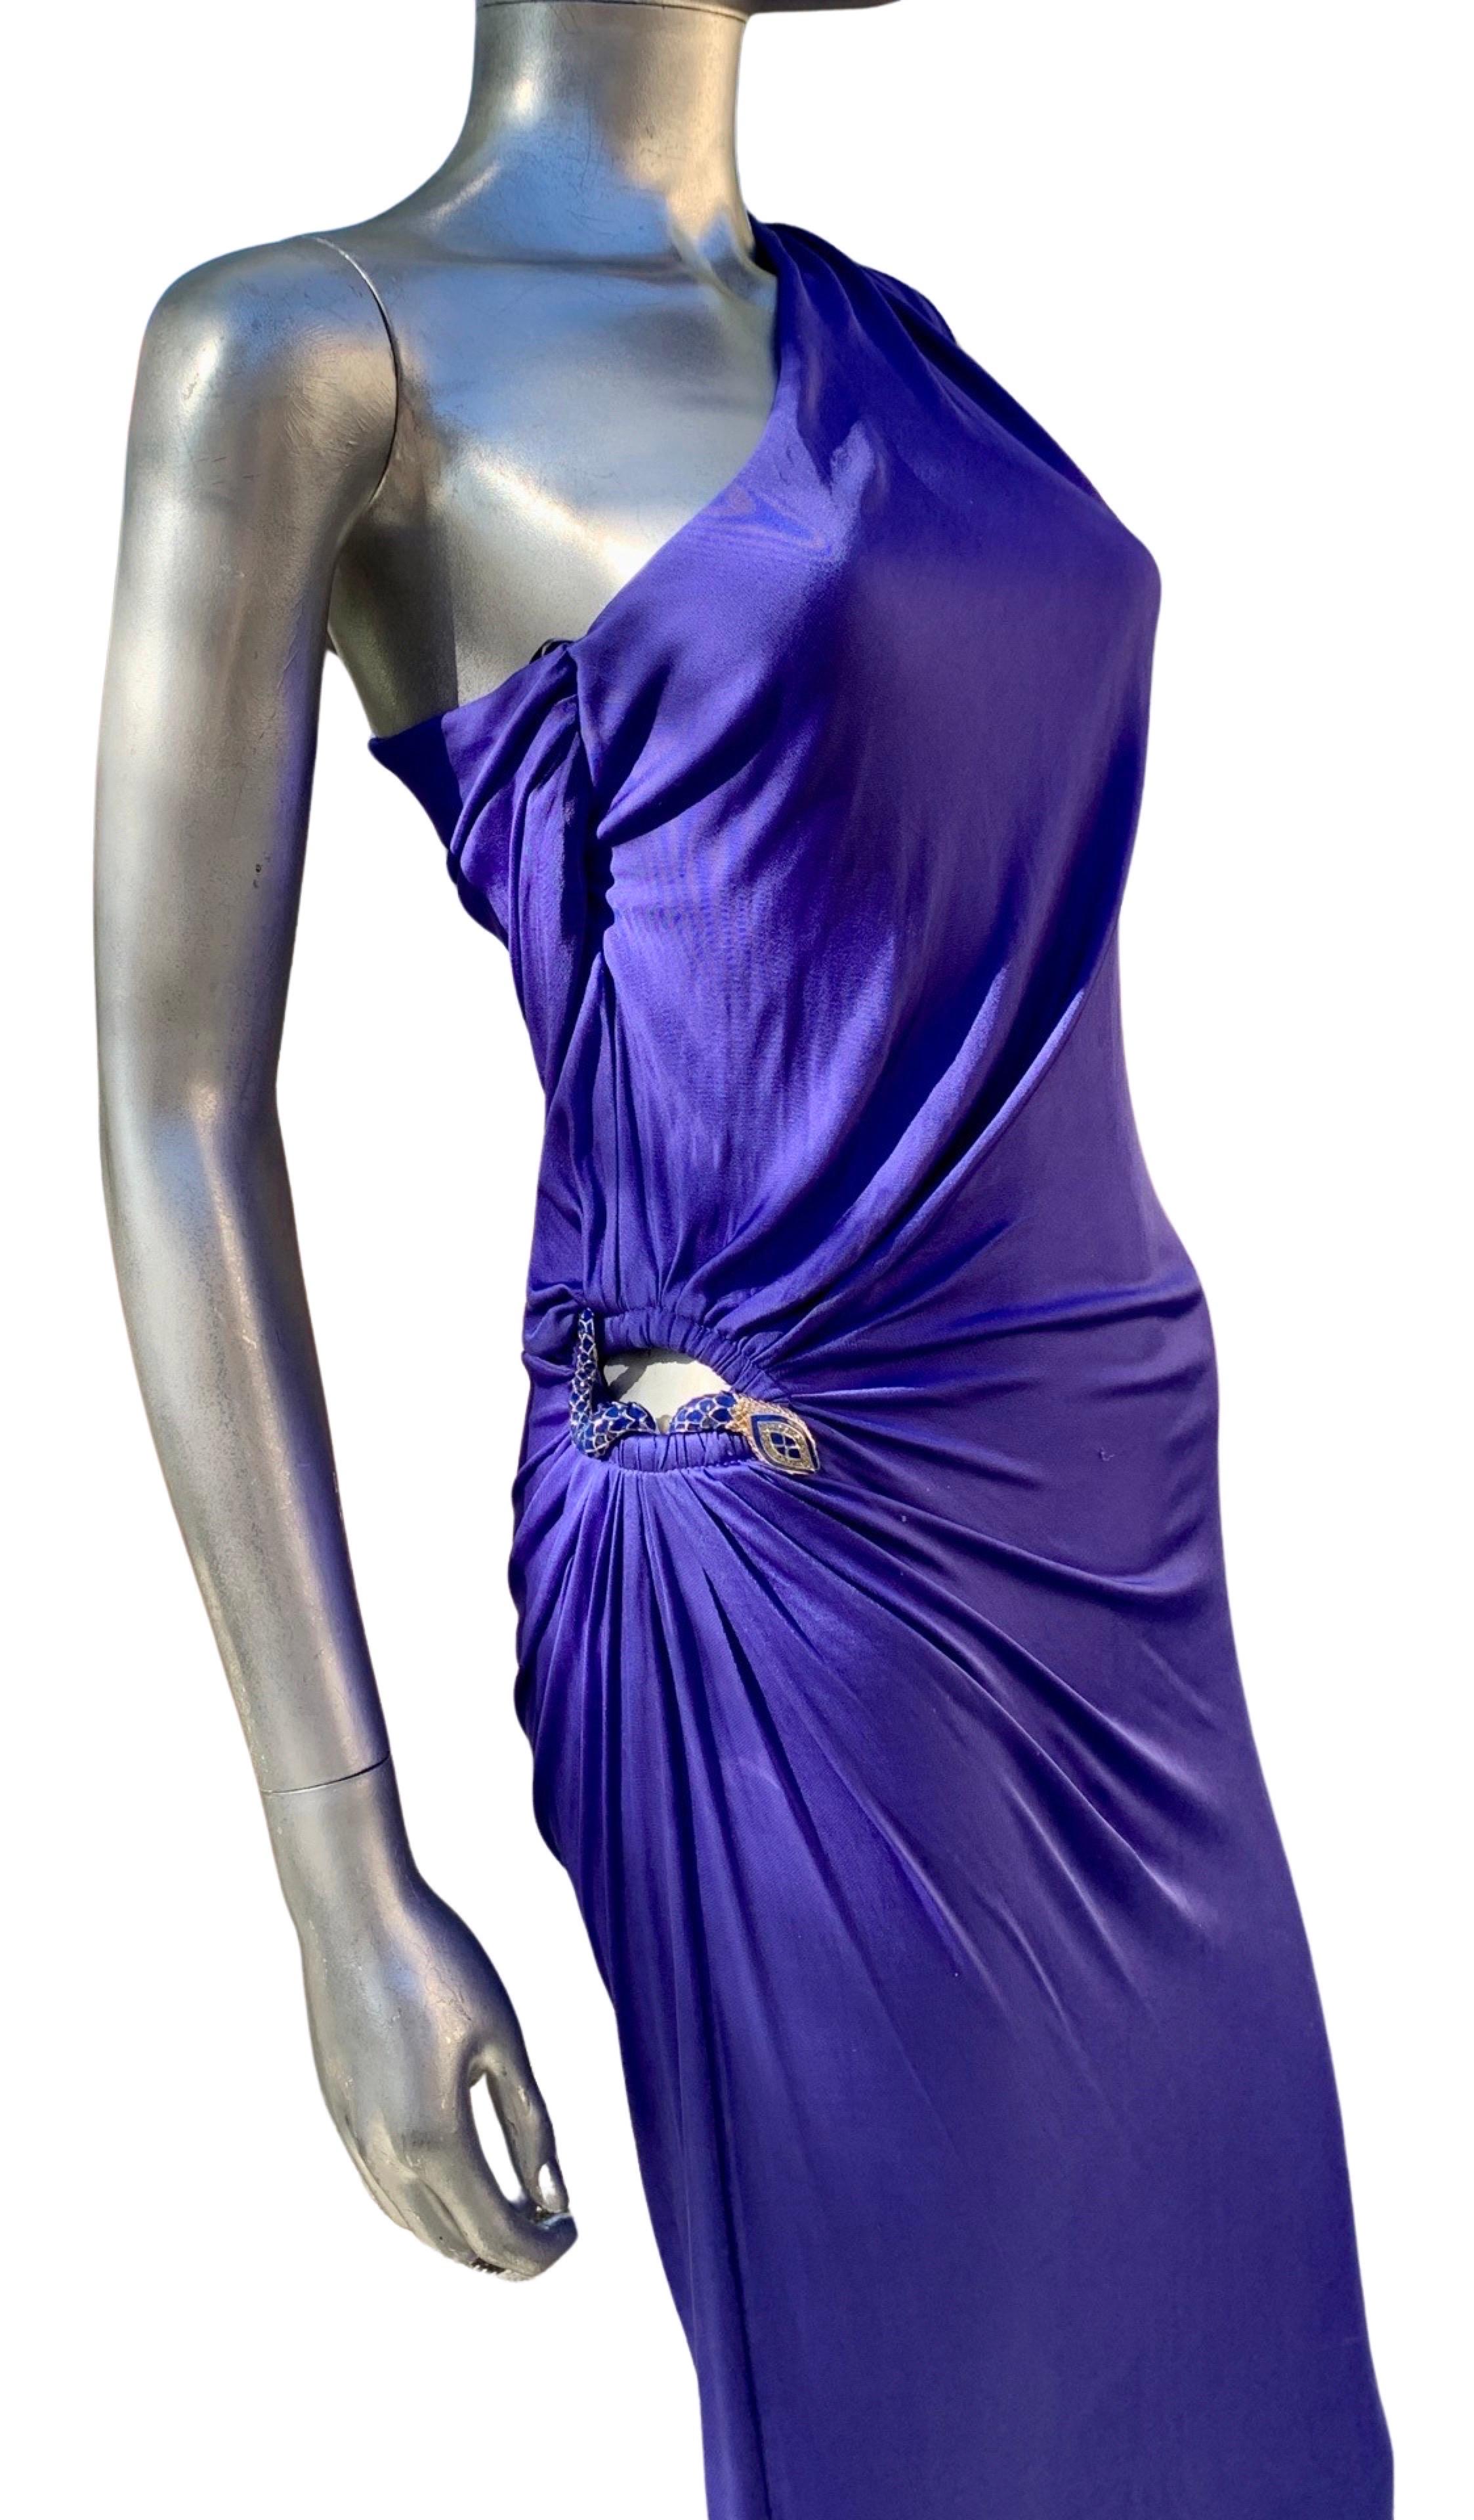 Wir sind absolut besessen von diesem Kleid. Von einer unserer schicken New Yorker Fashionista-Kundinnen wurde dieses blaue Jersey-Kleid mit einer Schulter einmal getragen. Es hat alles. Ein wunderschönes Kleid mit einer Schulter, das perfekt